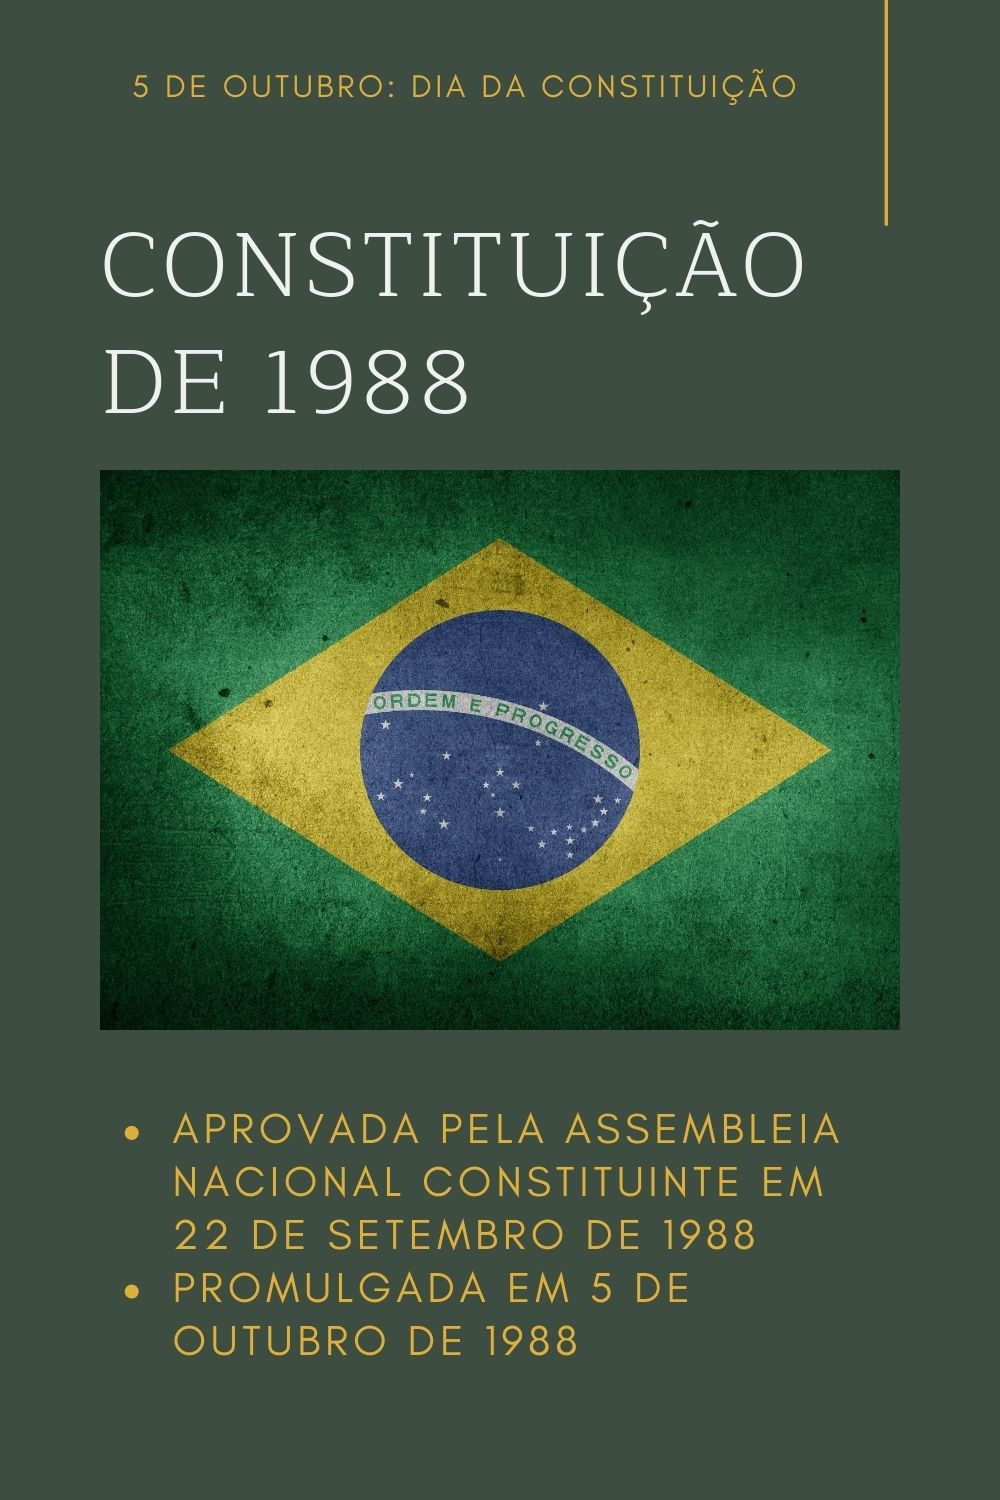 5 de Outubro: DIA DA CONSTITUIÇÃO DE 1988